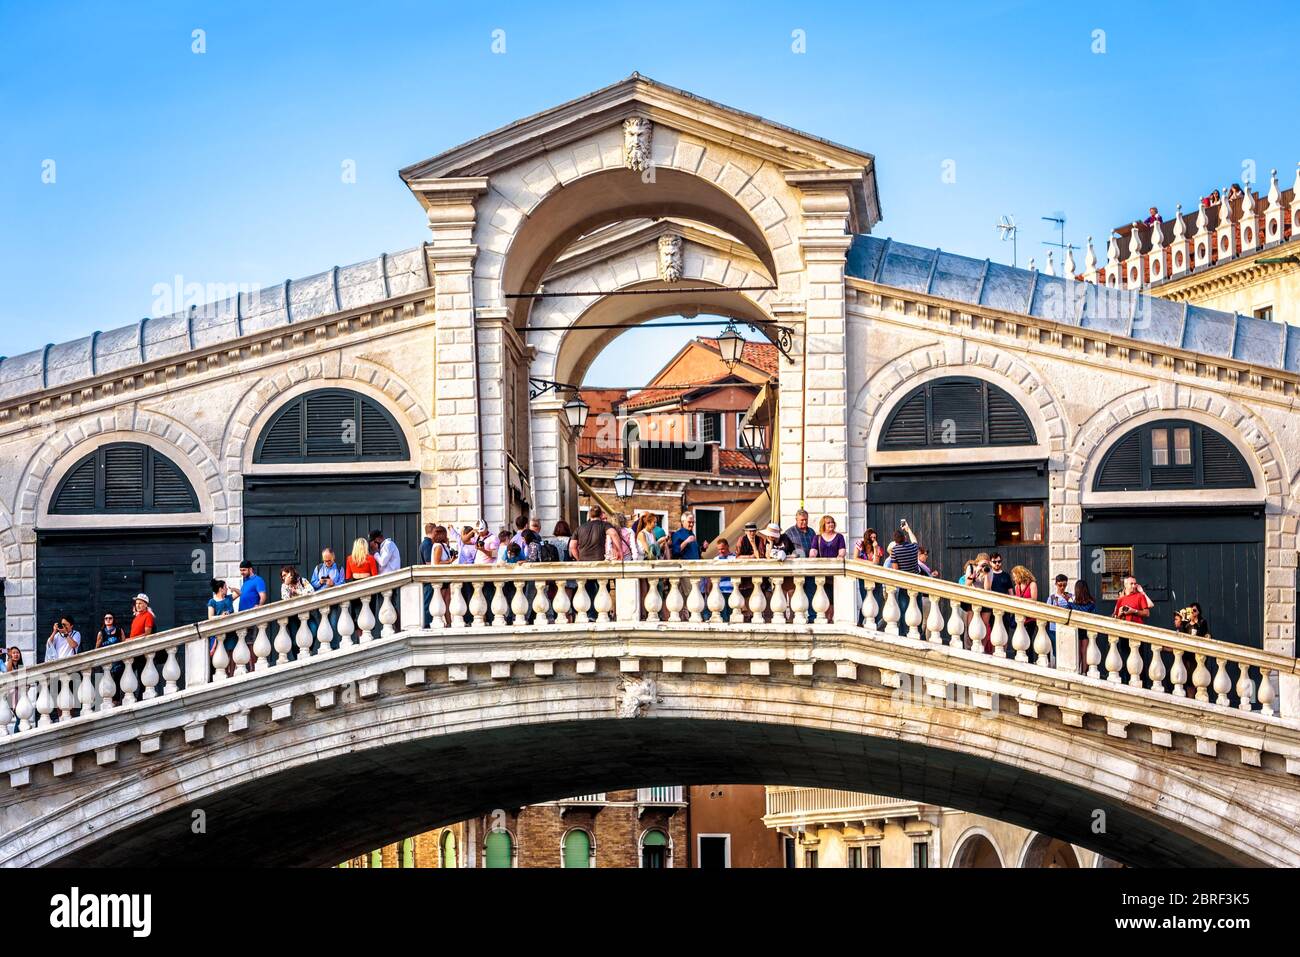 Venise, Italie - 18 mai 2017 : Pont du Rialto avec beaucoup de gens en gros plan. Le vieux pont Ponte di Rialto est l'une des attractions touristiques de Venise. FAM Banque D'Images